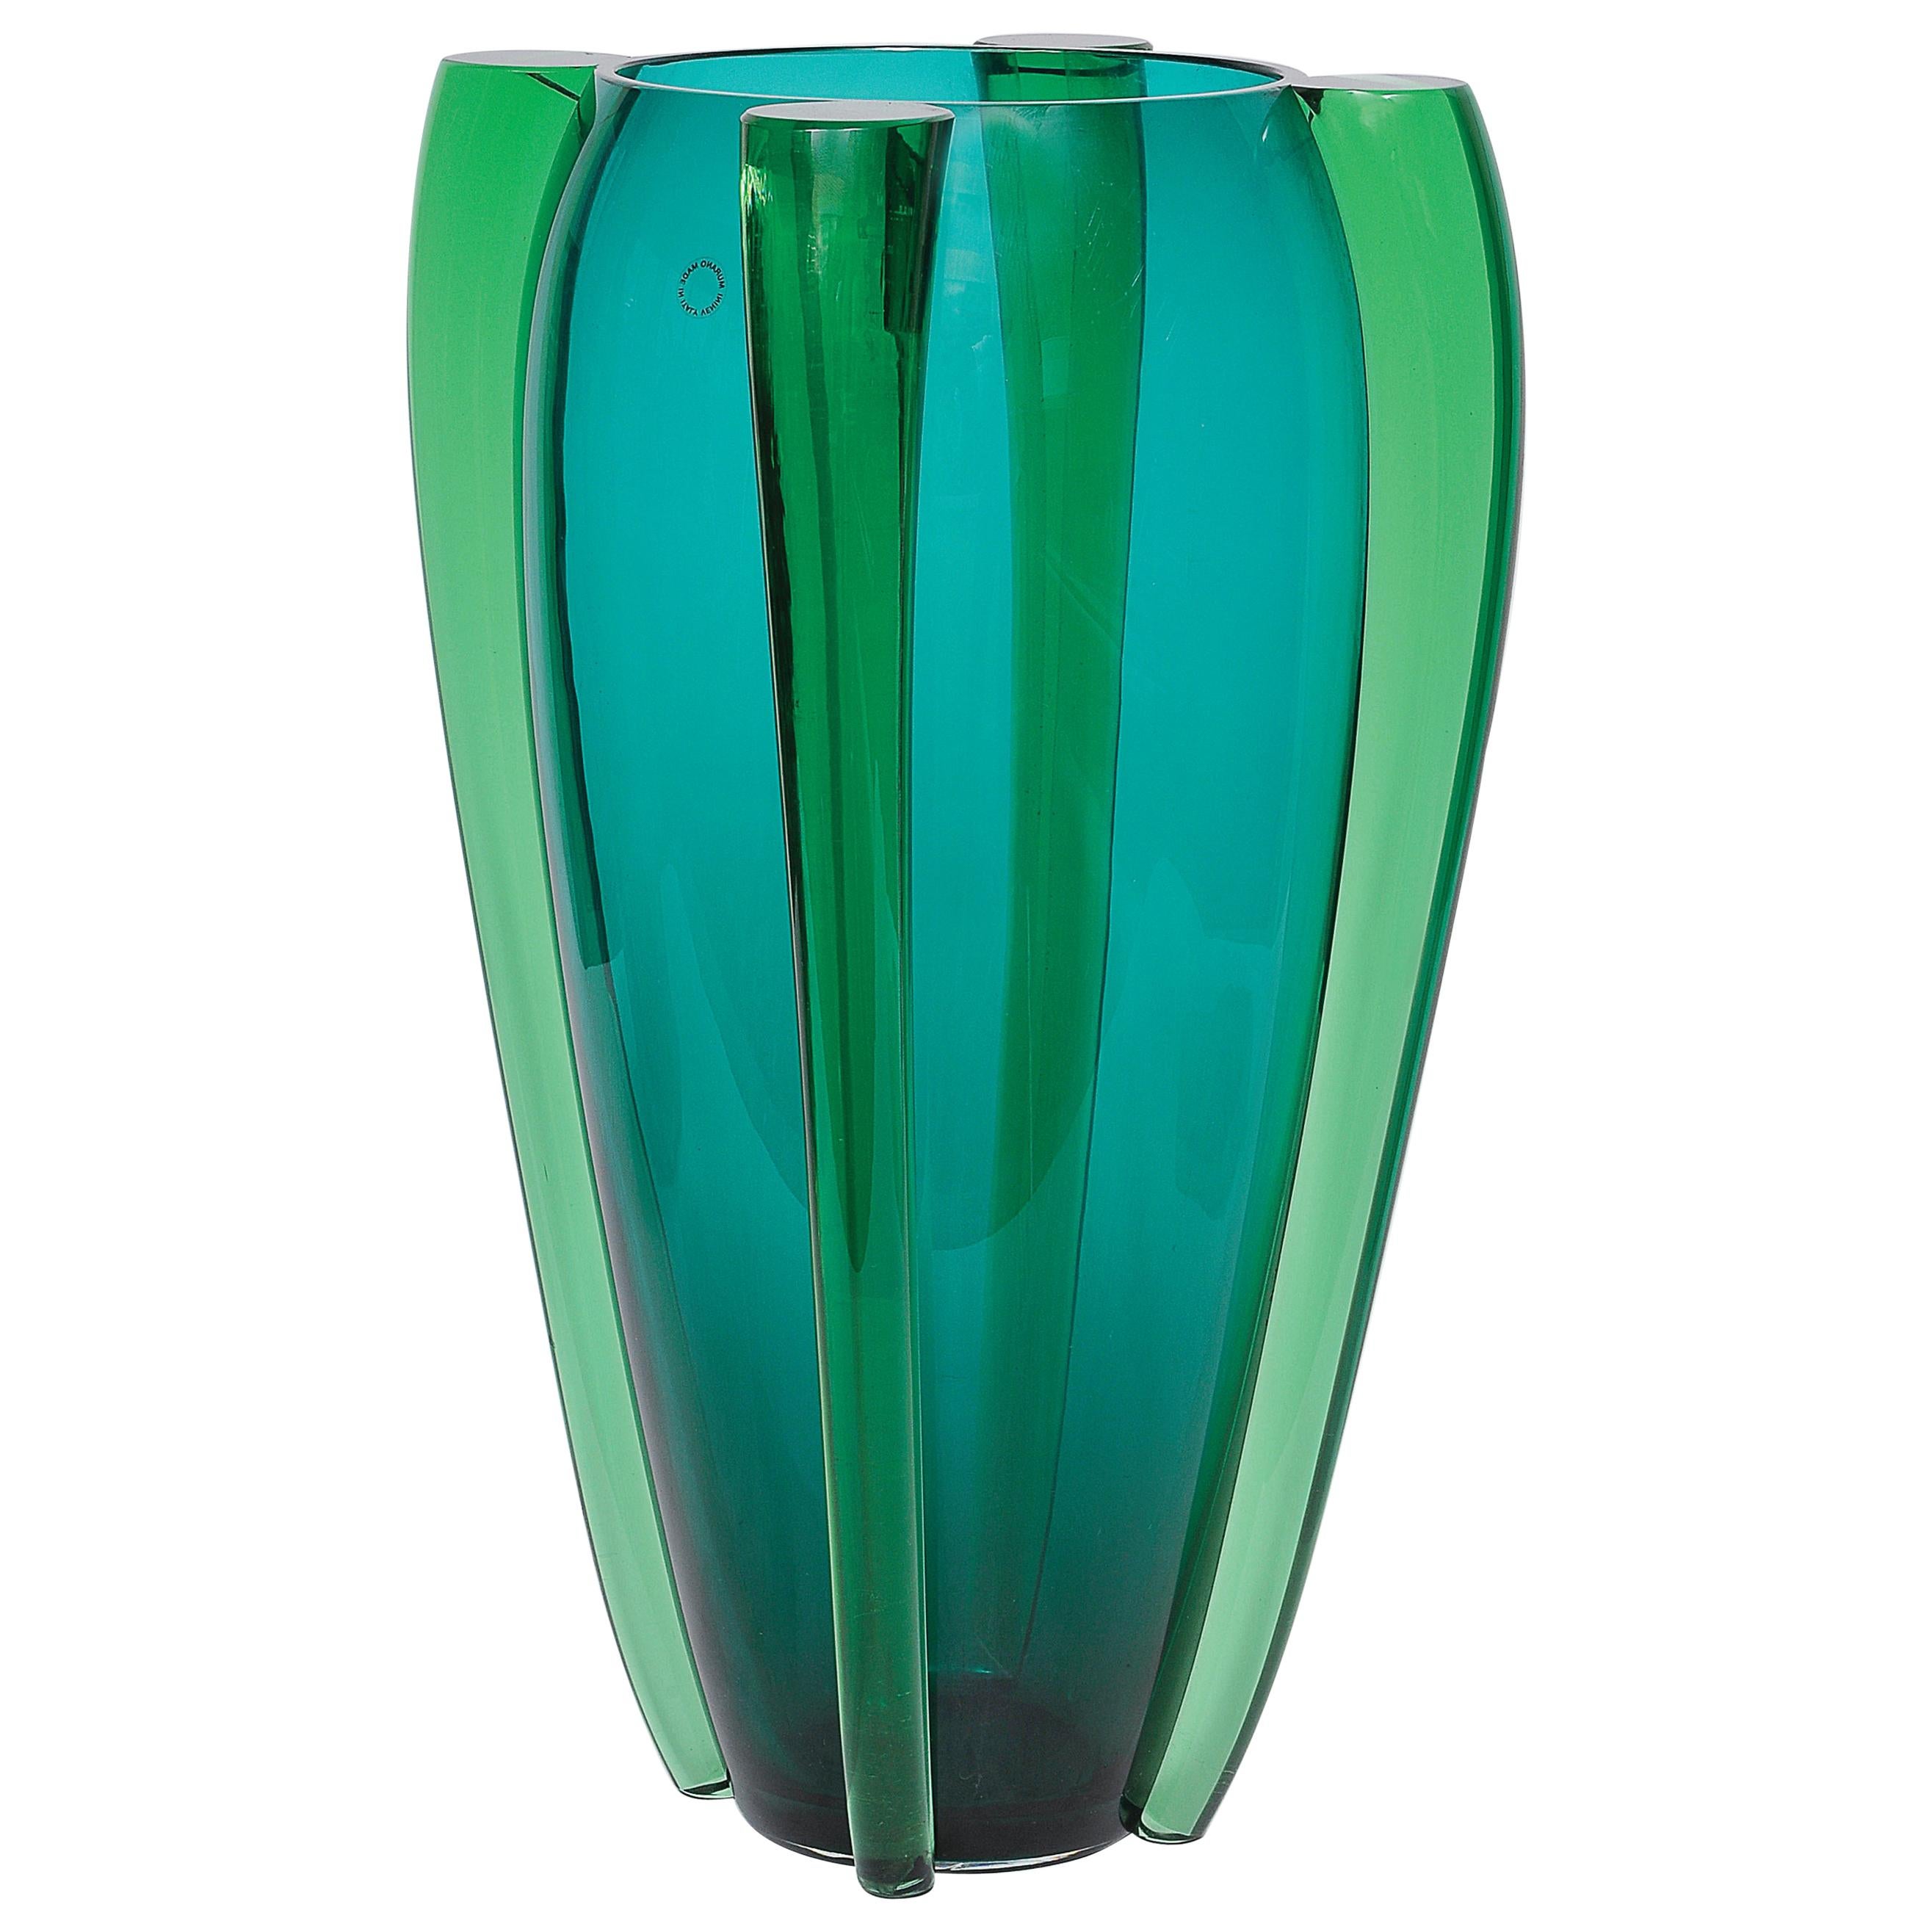 Venini, Murano Glass, Emerald Green, circa 1950, Sideralis Vase For Sale